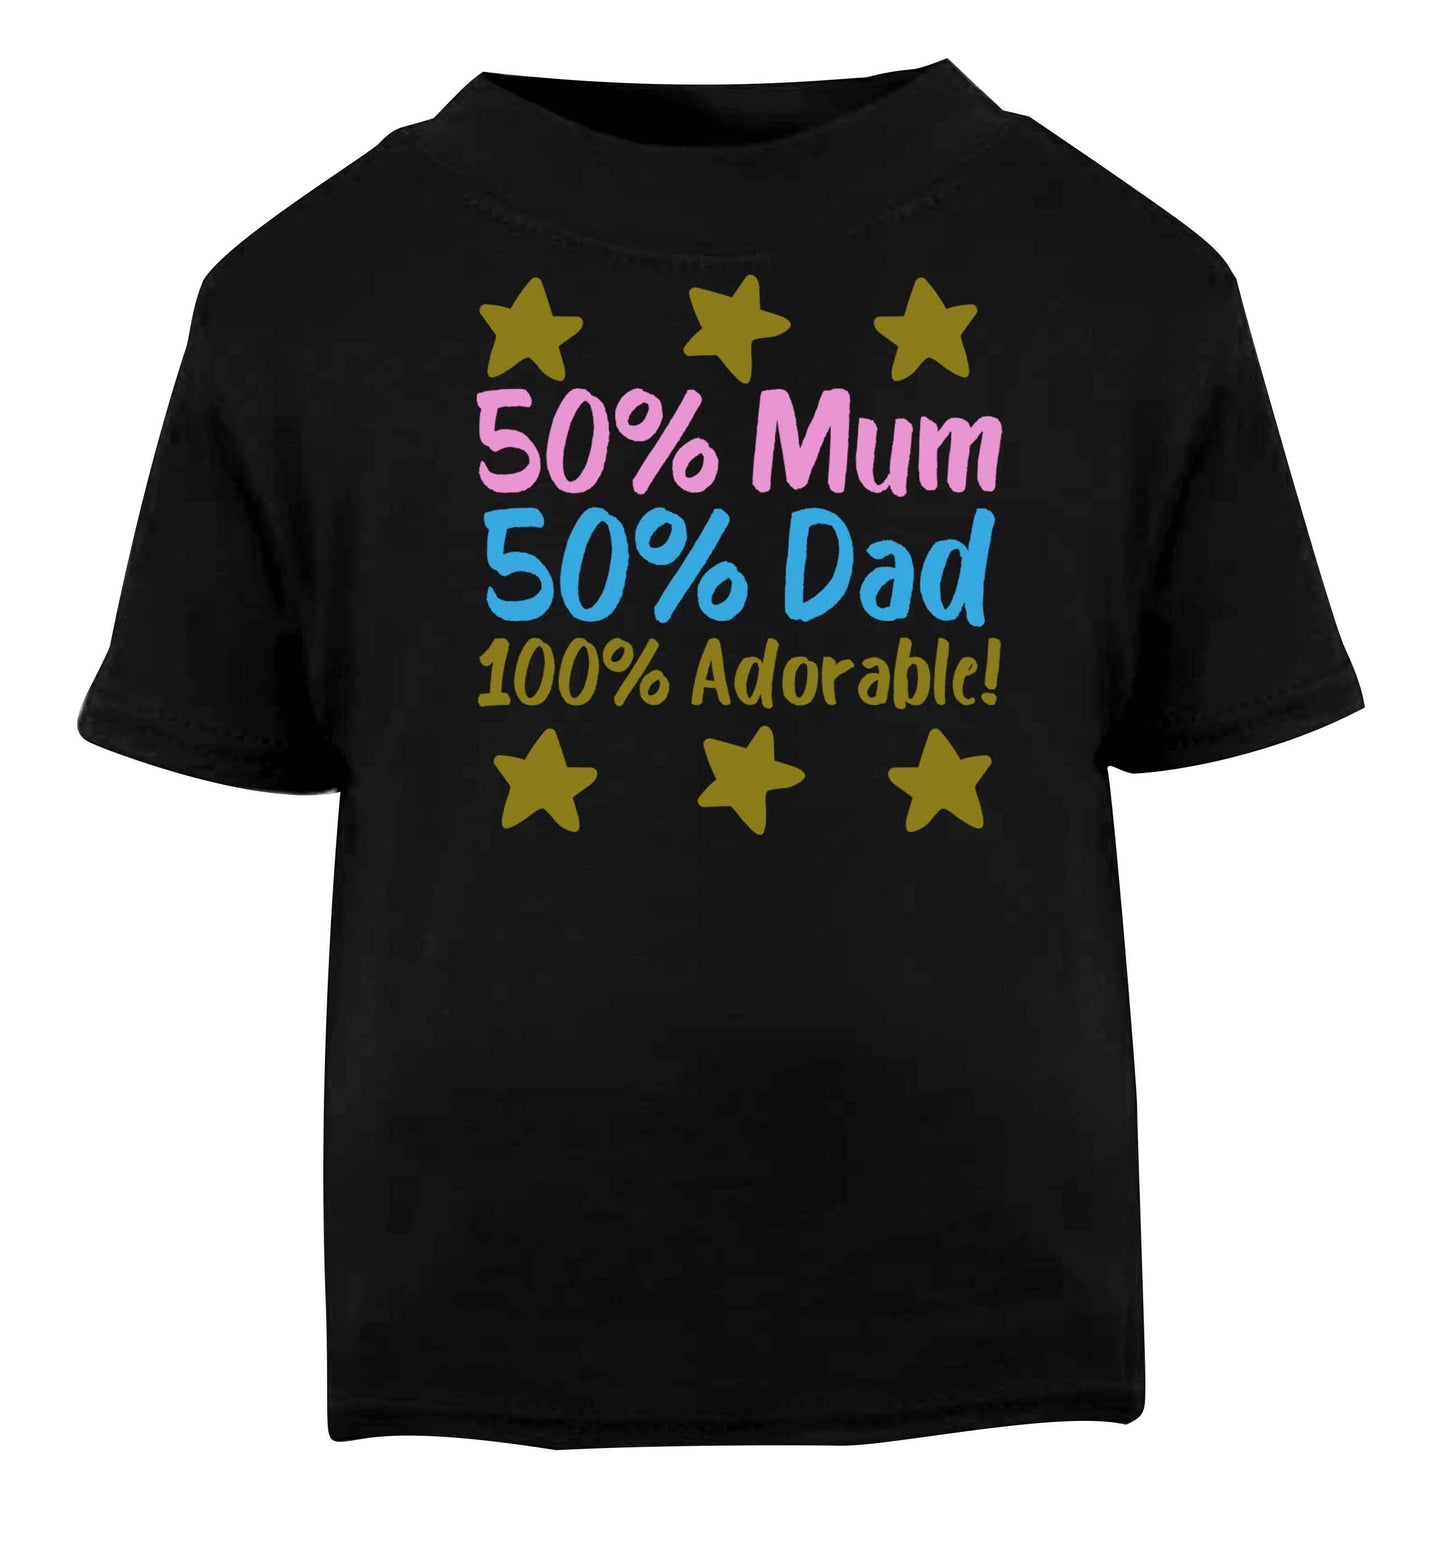 50% mum 50% dad 100% adorable Black baby toddler Tshirt 2 years